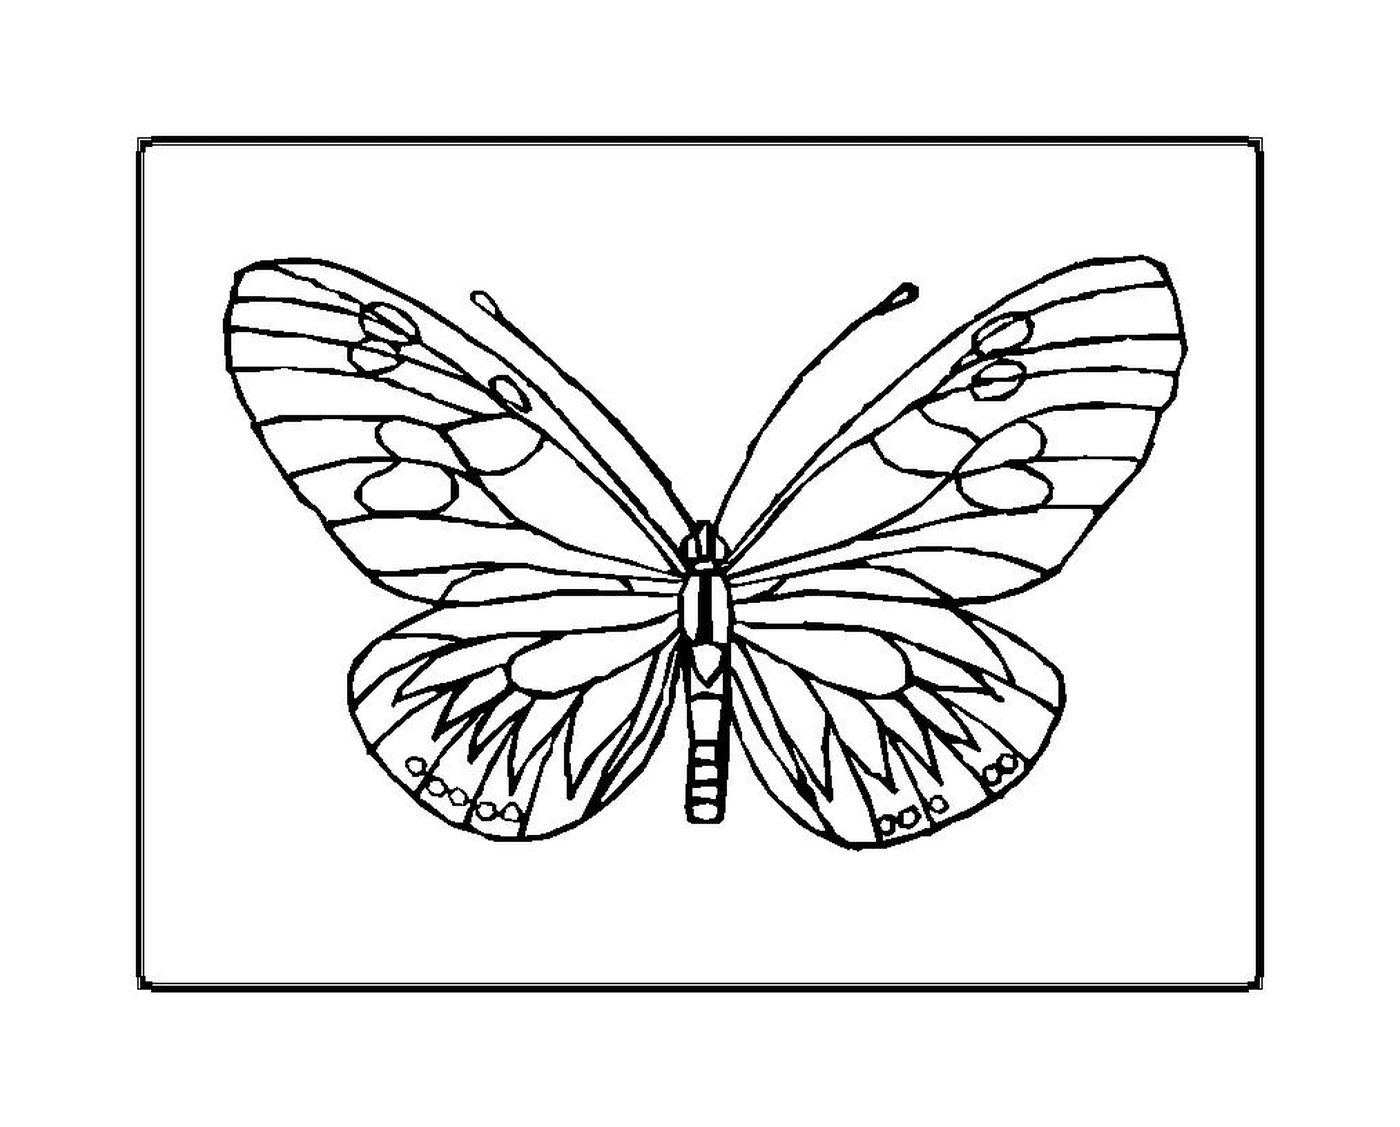  borboleta delicada e frágil 